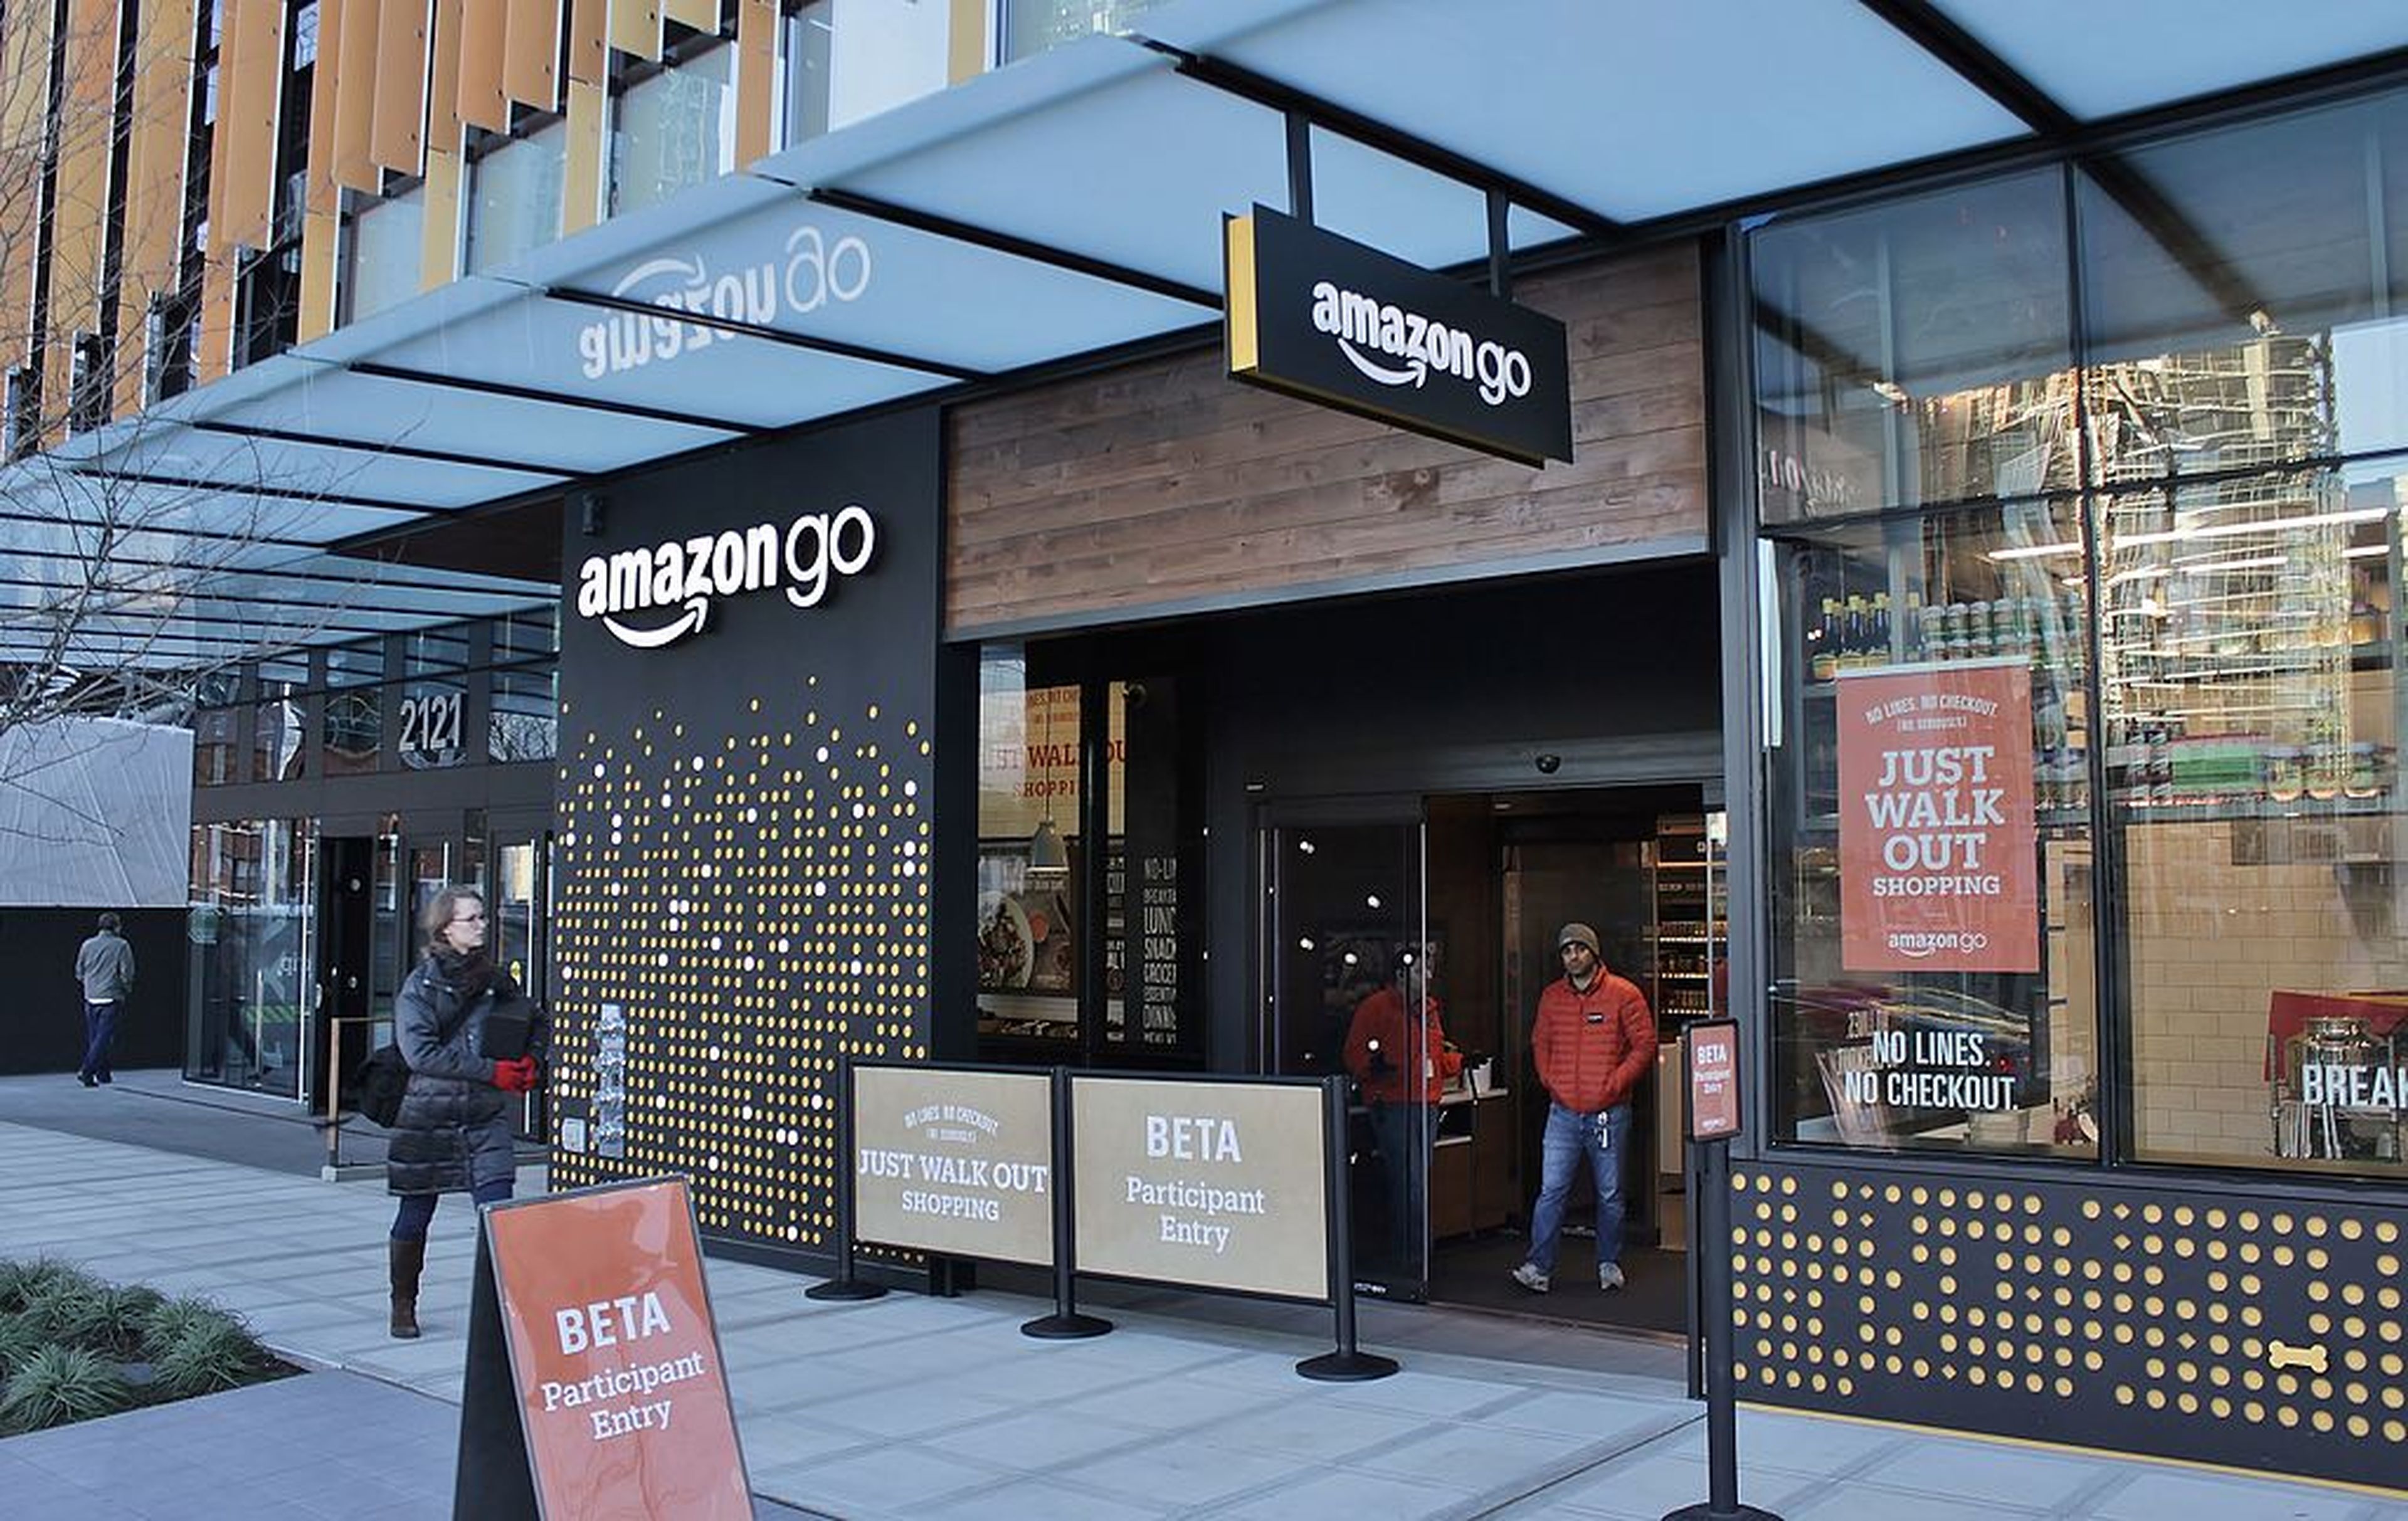 Una tienda Amazon Go en Seattle (EE.UU.)